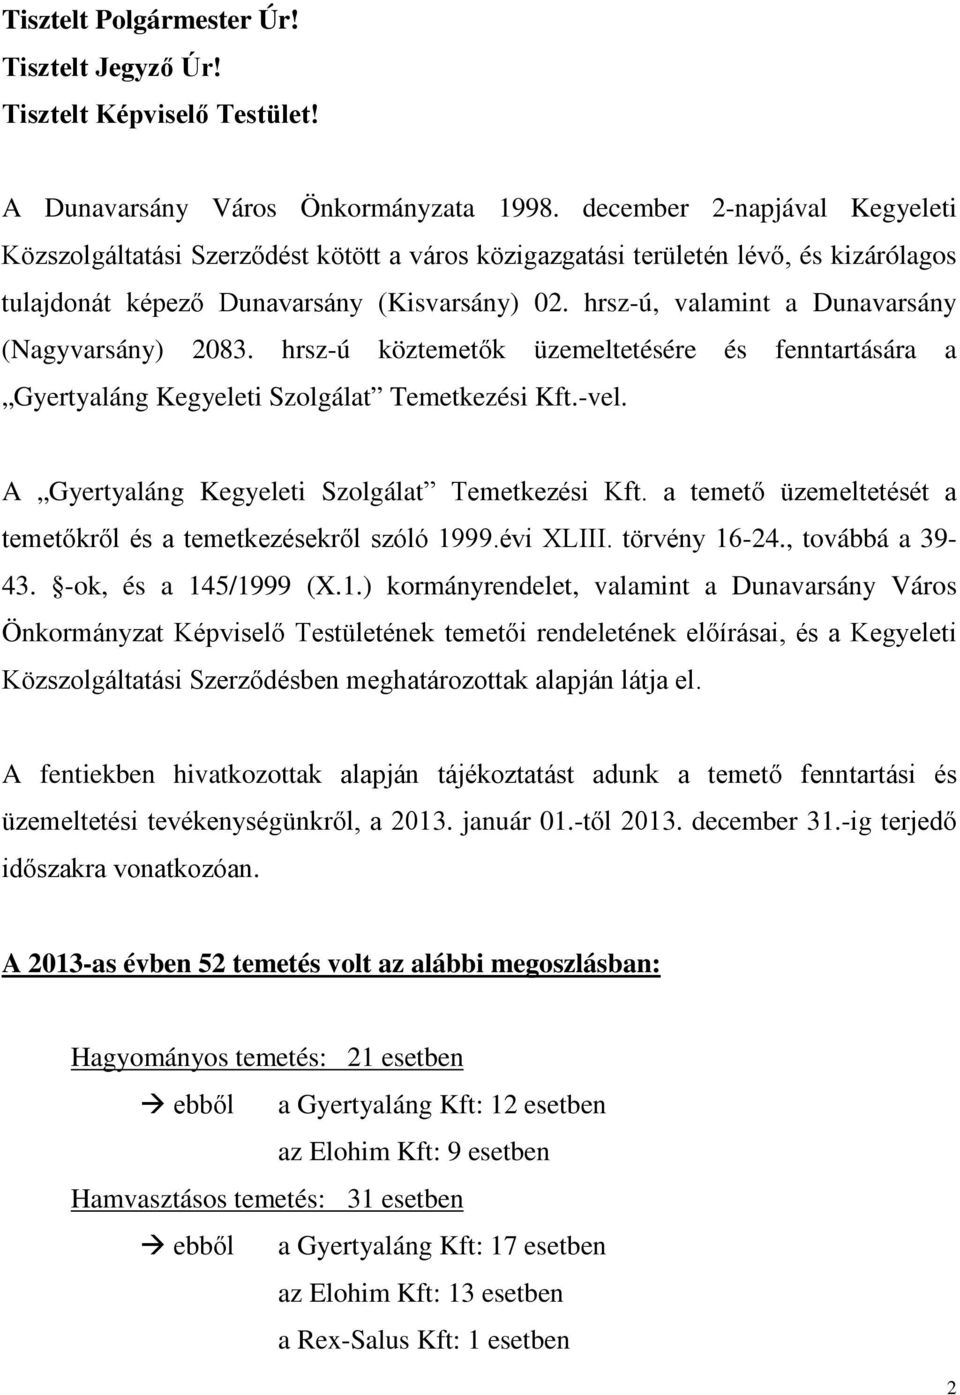 hrsz-ú, valamint a Dunavarsány (Nagyvarsány) 2083. hrsz-ú köztemetők üzemeltetésére és fenntartására a Gyertyaláng Kegyeleti Szolgálat Temetkezési Kft.-vel.